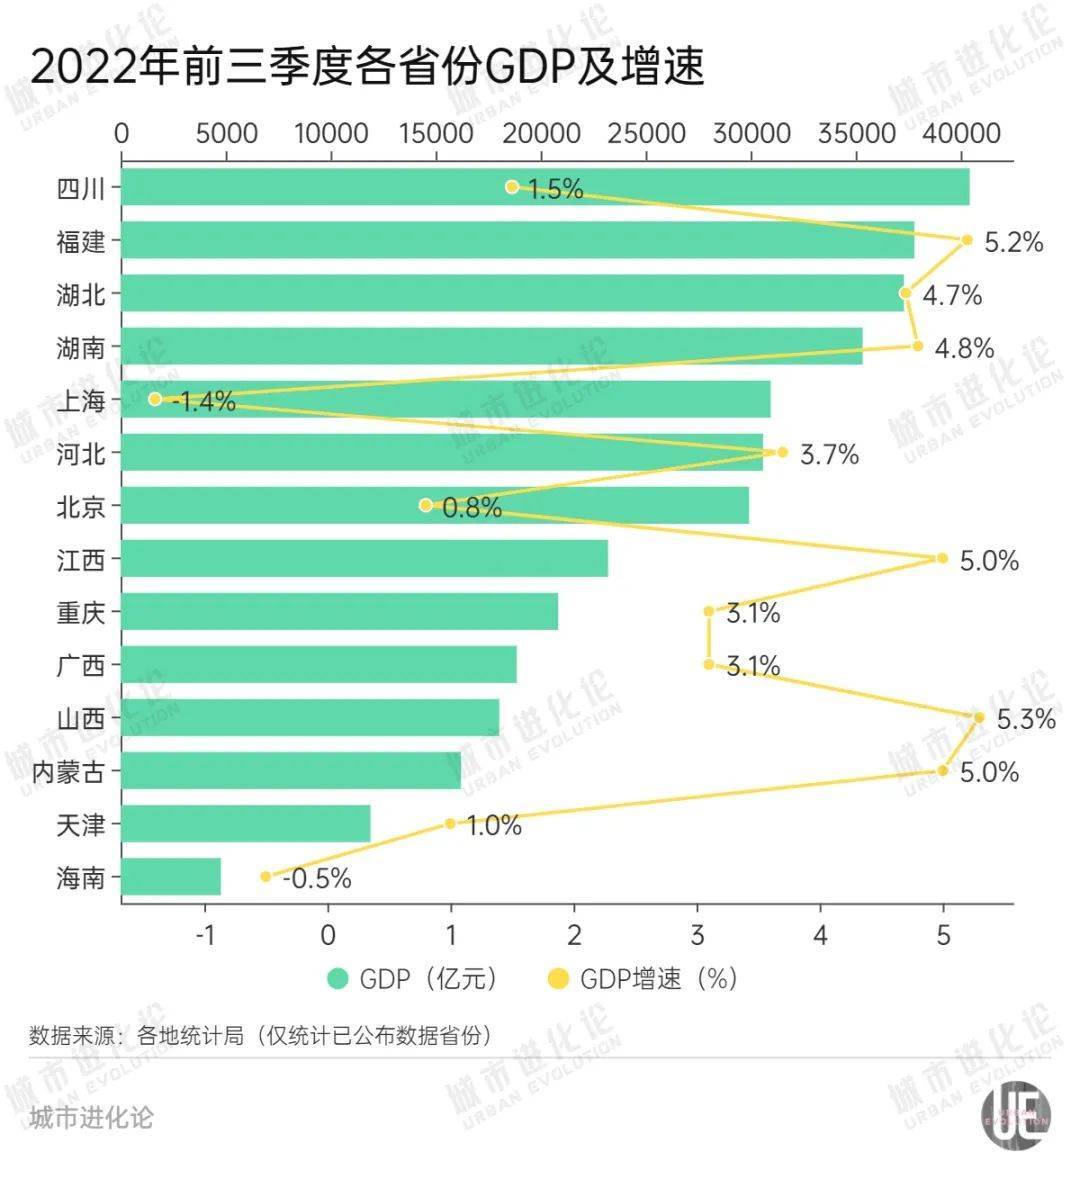 各地陆续披露前三季度经济数据。  在已晒出“成绩单”的14个省区市中，山西以5.3%的增速领跑，继续保持近年发展势头；上海、海南则是唯二未能实现正增长的地区。不过，上海经济仍然表现出强劲实力，以30956.65亿元GDP总量反超北京1030.35亿元，重回“经济第一城”。